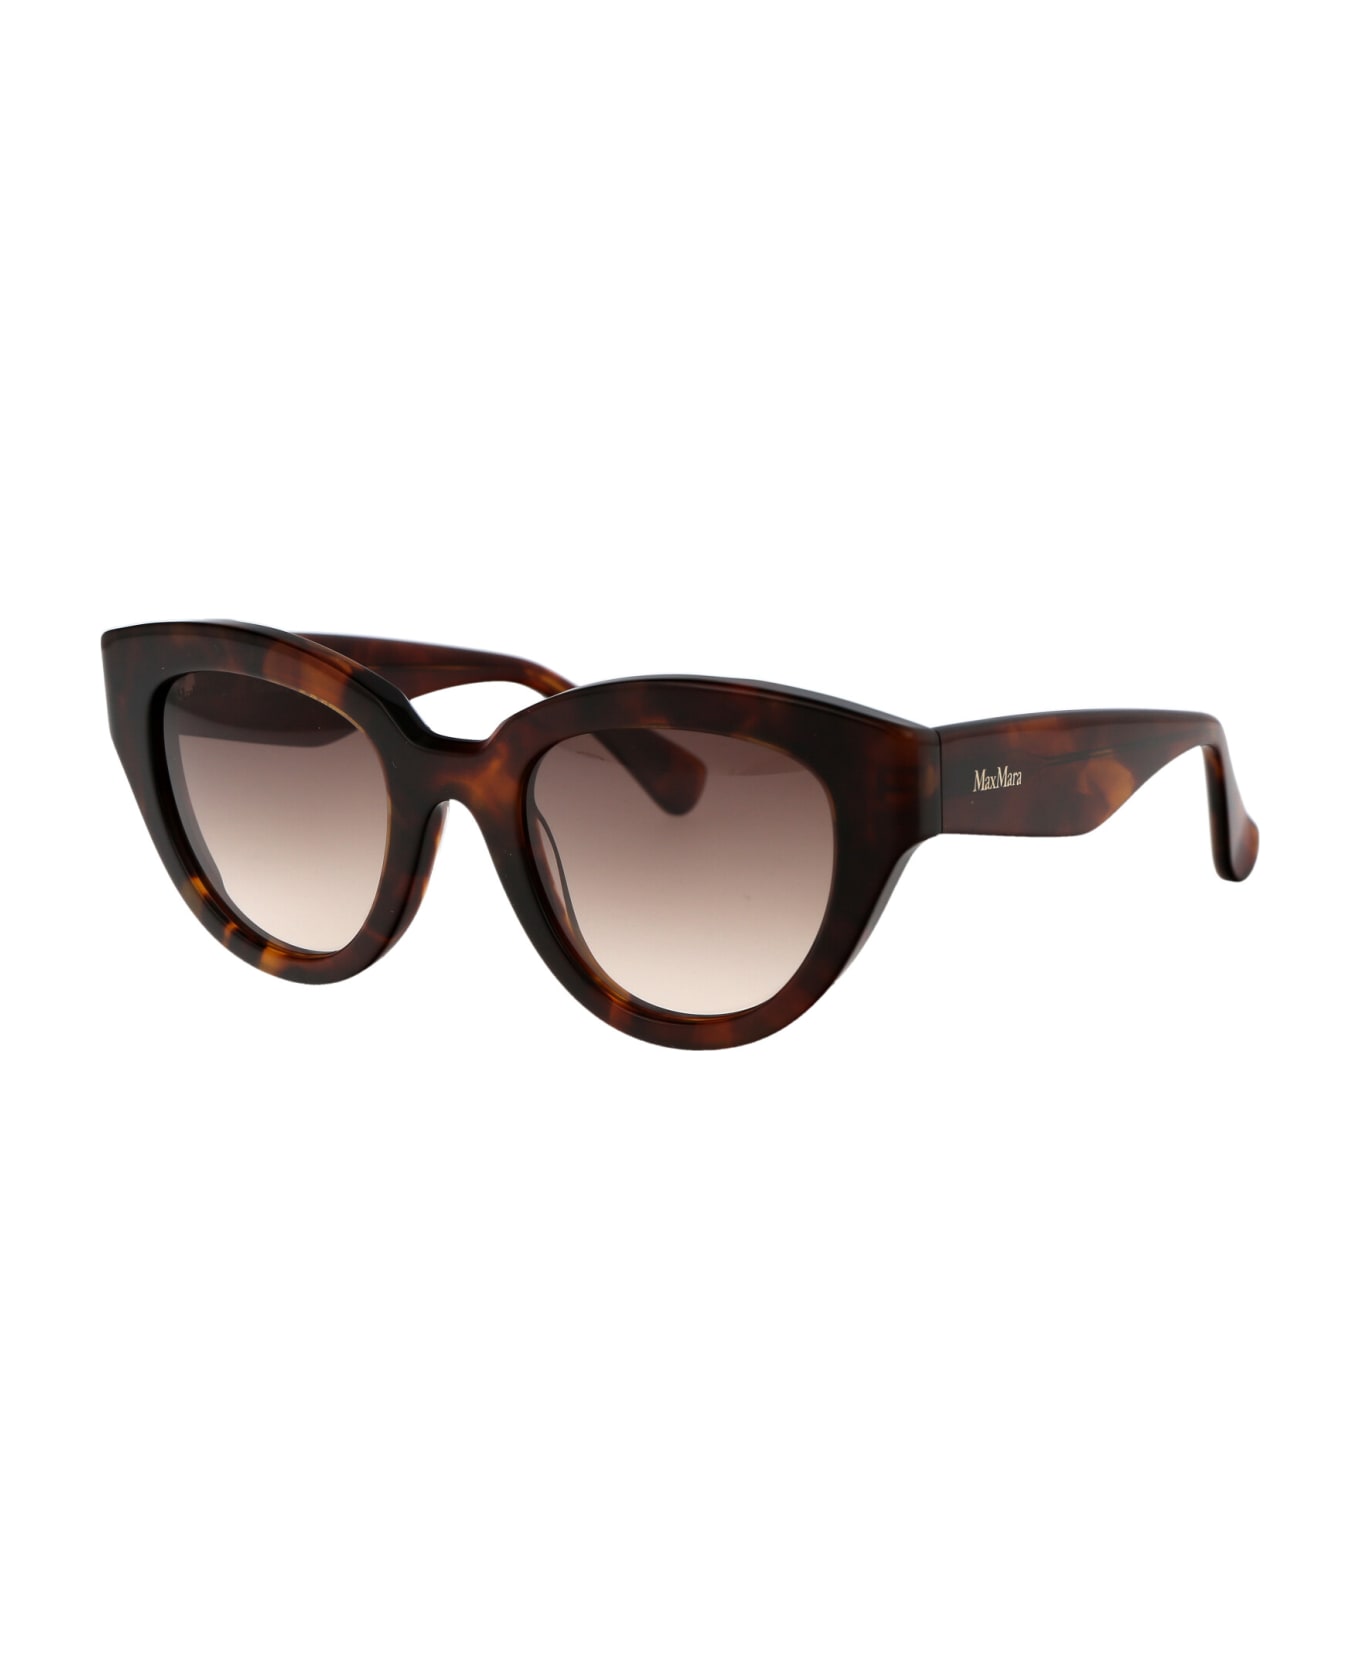 Max Mara Glimpse1 Sunglasses - 53F Avana Bionda/Marrone Grad